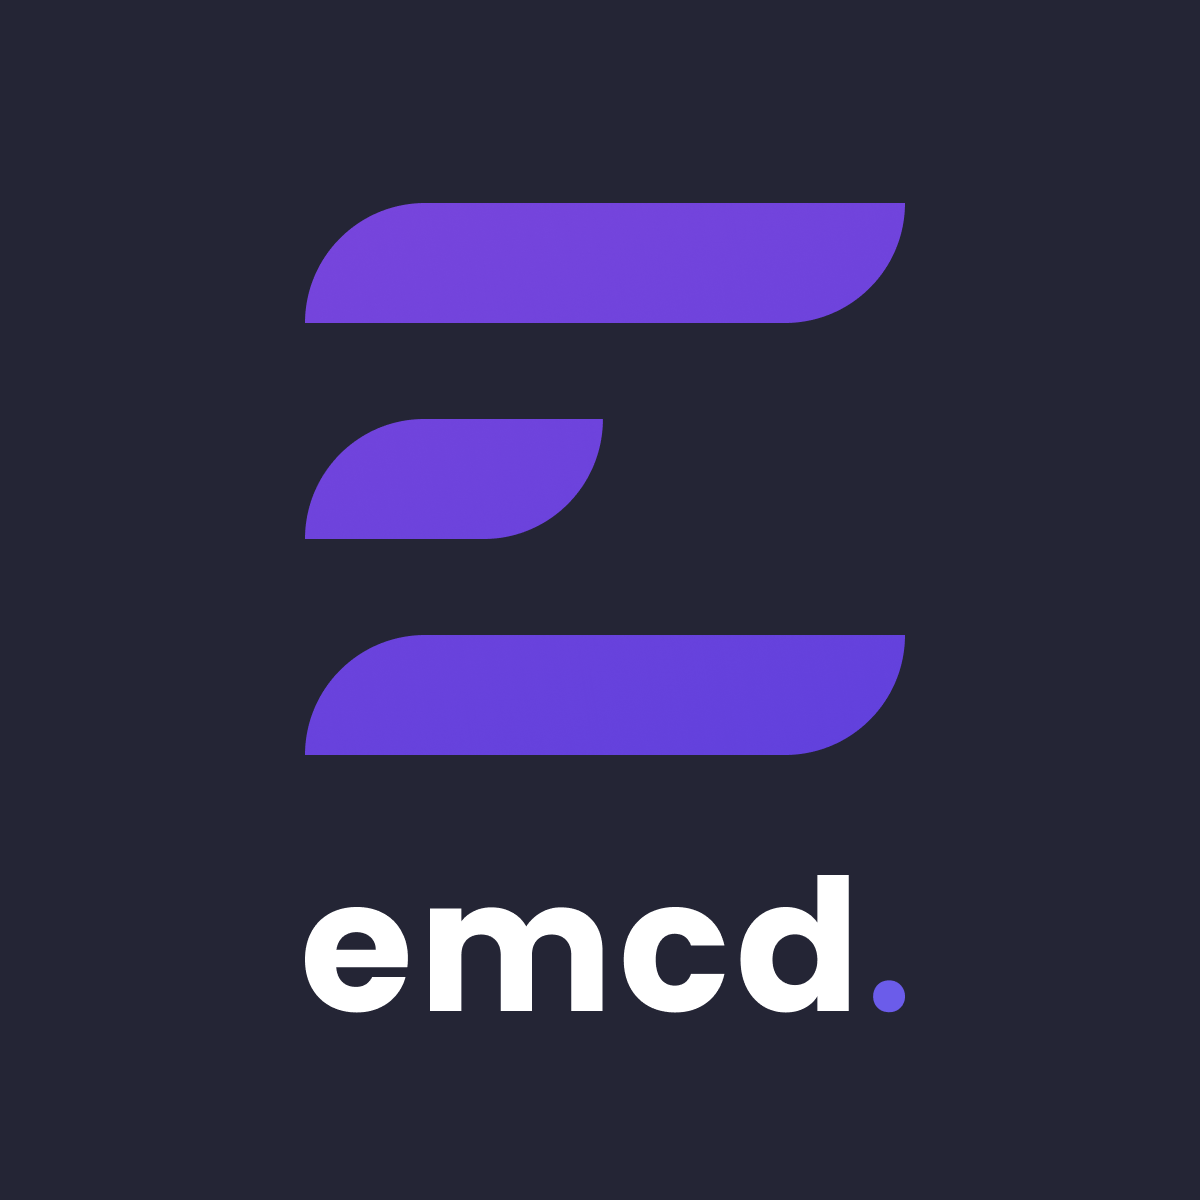 EMCD. EMCD logo. EMCD пул. Значки EMCD io. Emcd майнинг